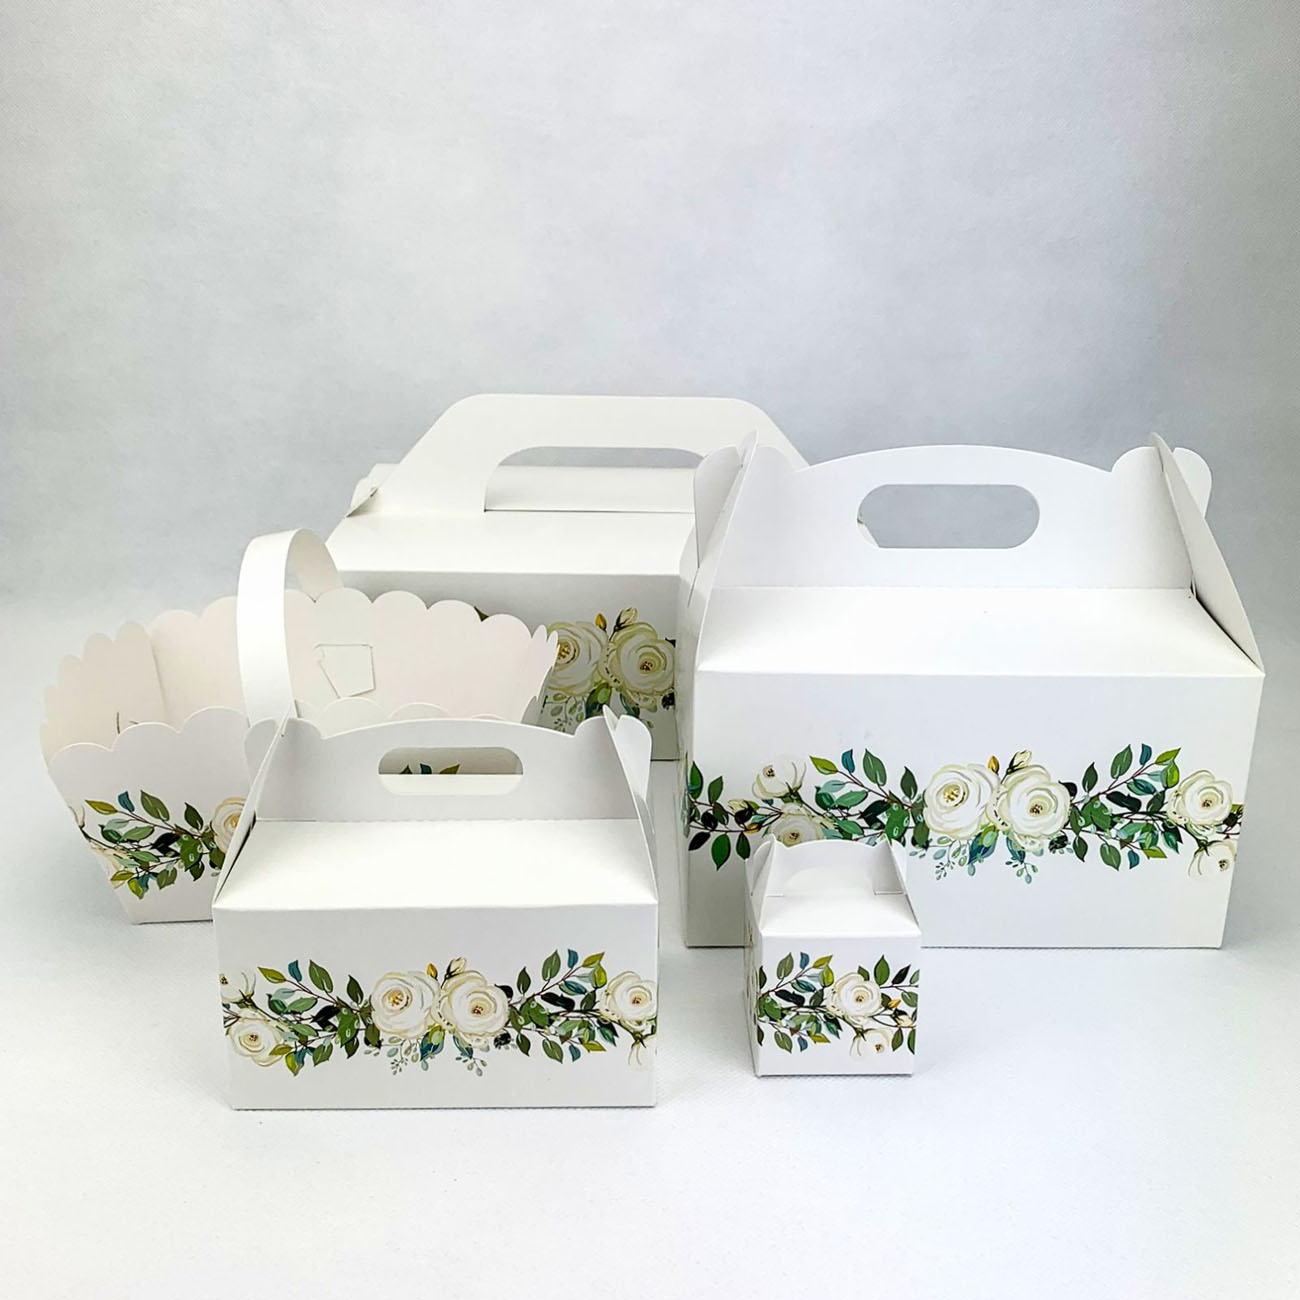 Svadobná krabička s bielymi ružami - K50-4017-01